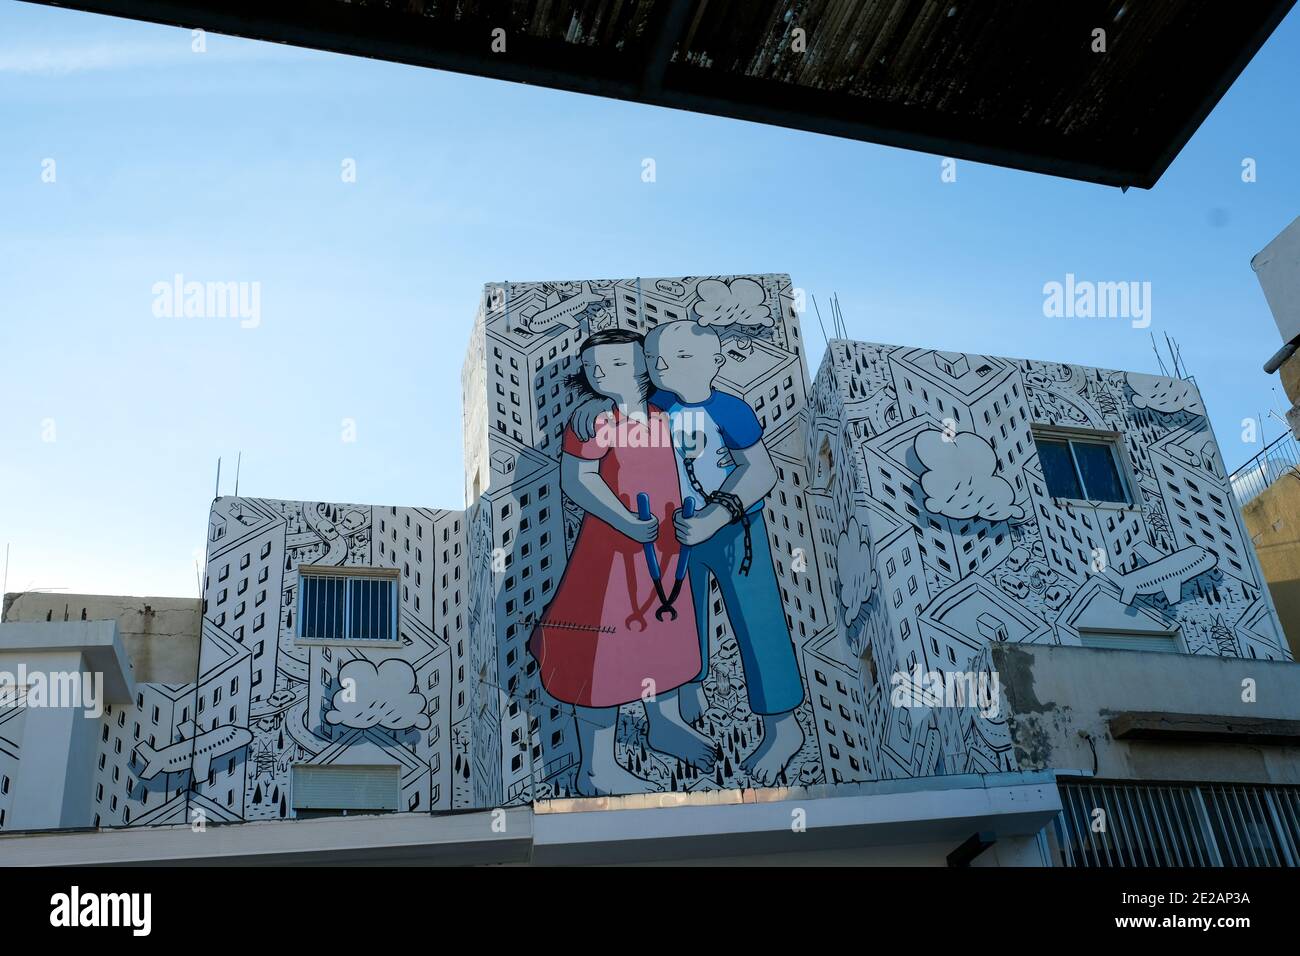 Wandmalerei in der Altstadt von Paphos von dem italienischen Künstler Francesco Camillo Giorgino ( bekannt als Millo) im Jahr 2017. Es wurde jetzt zerstört und übermalt Stockfoto